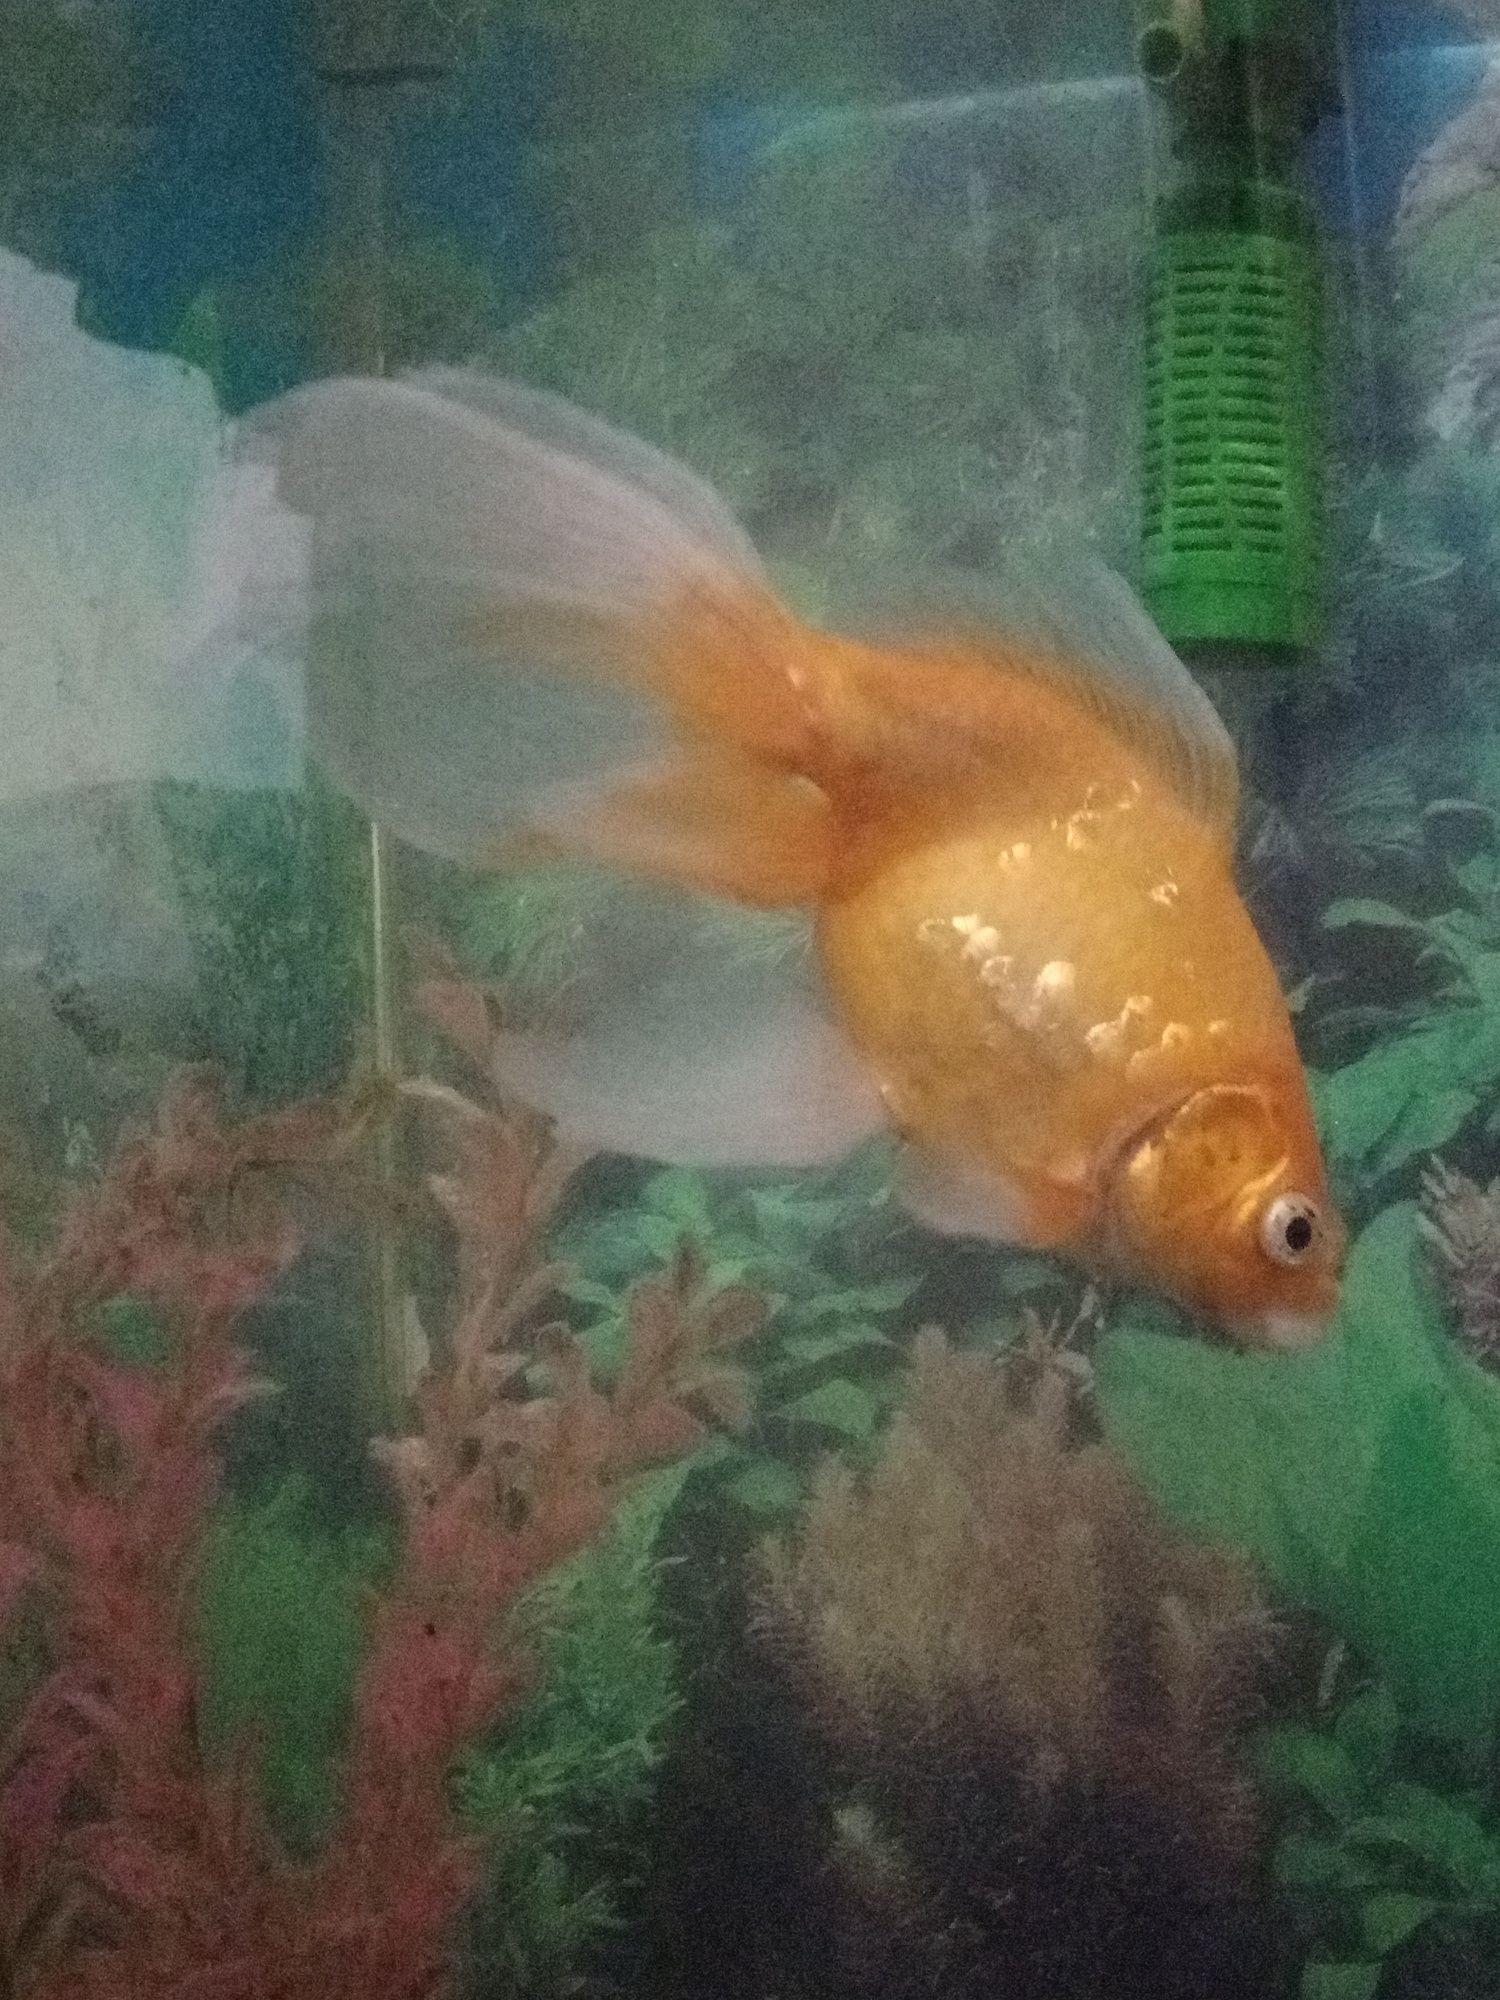 золотая рыба с аквариумом